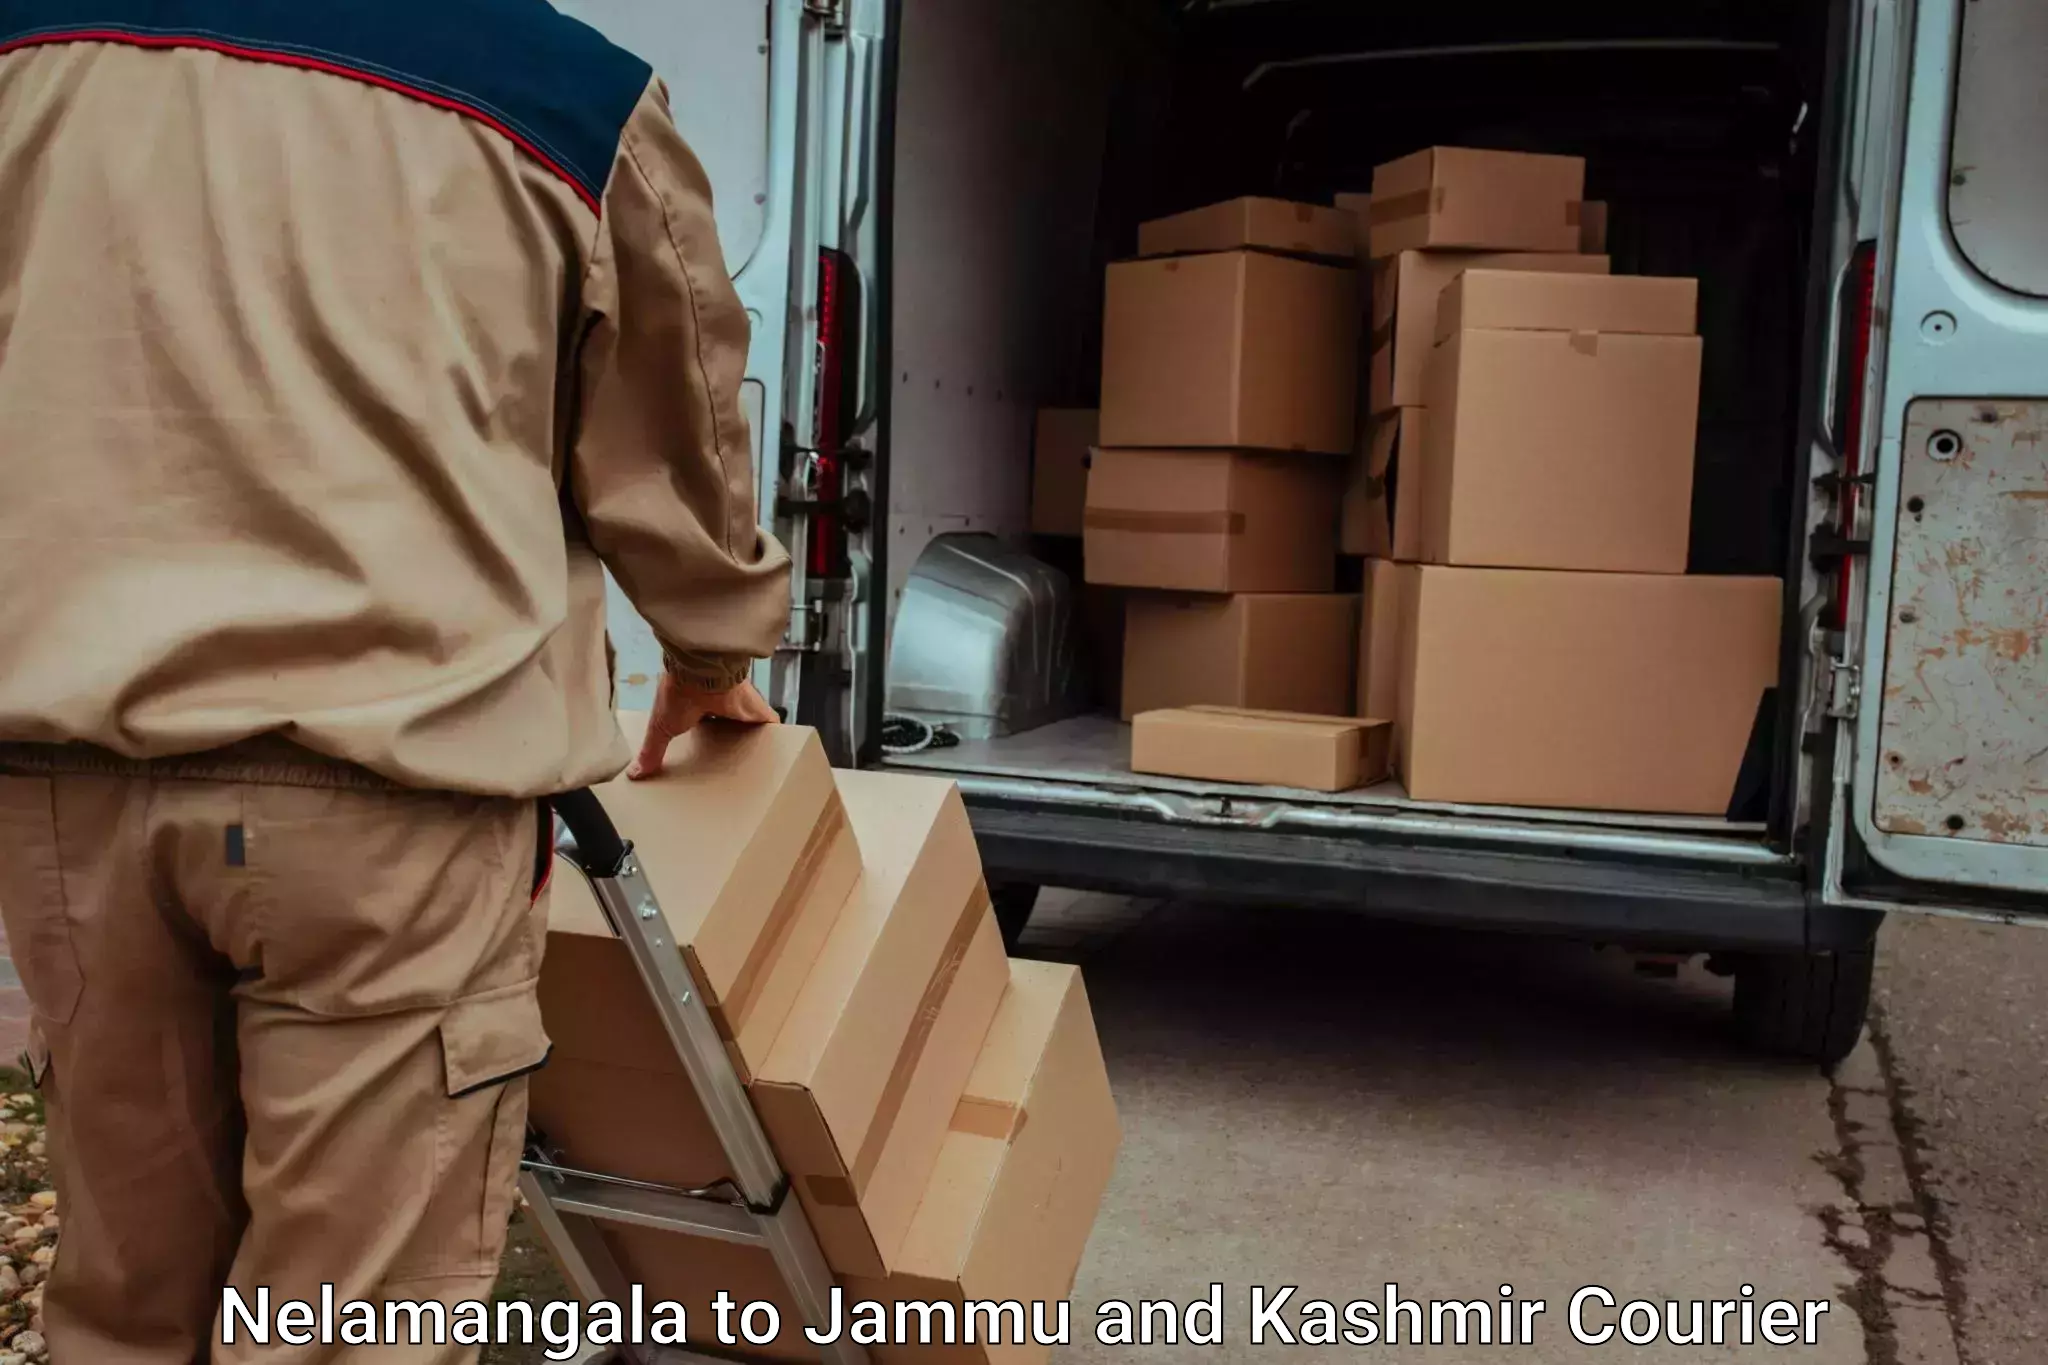 Luggage delivery network Nelamangala to Kargil